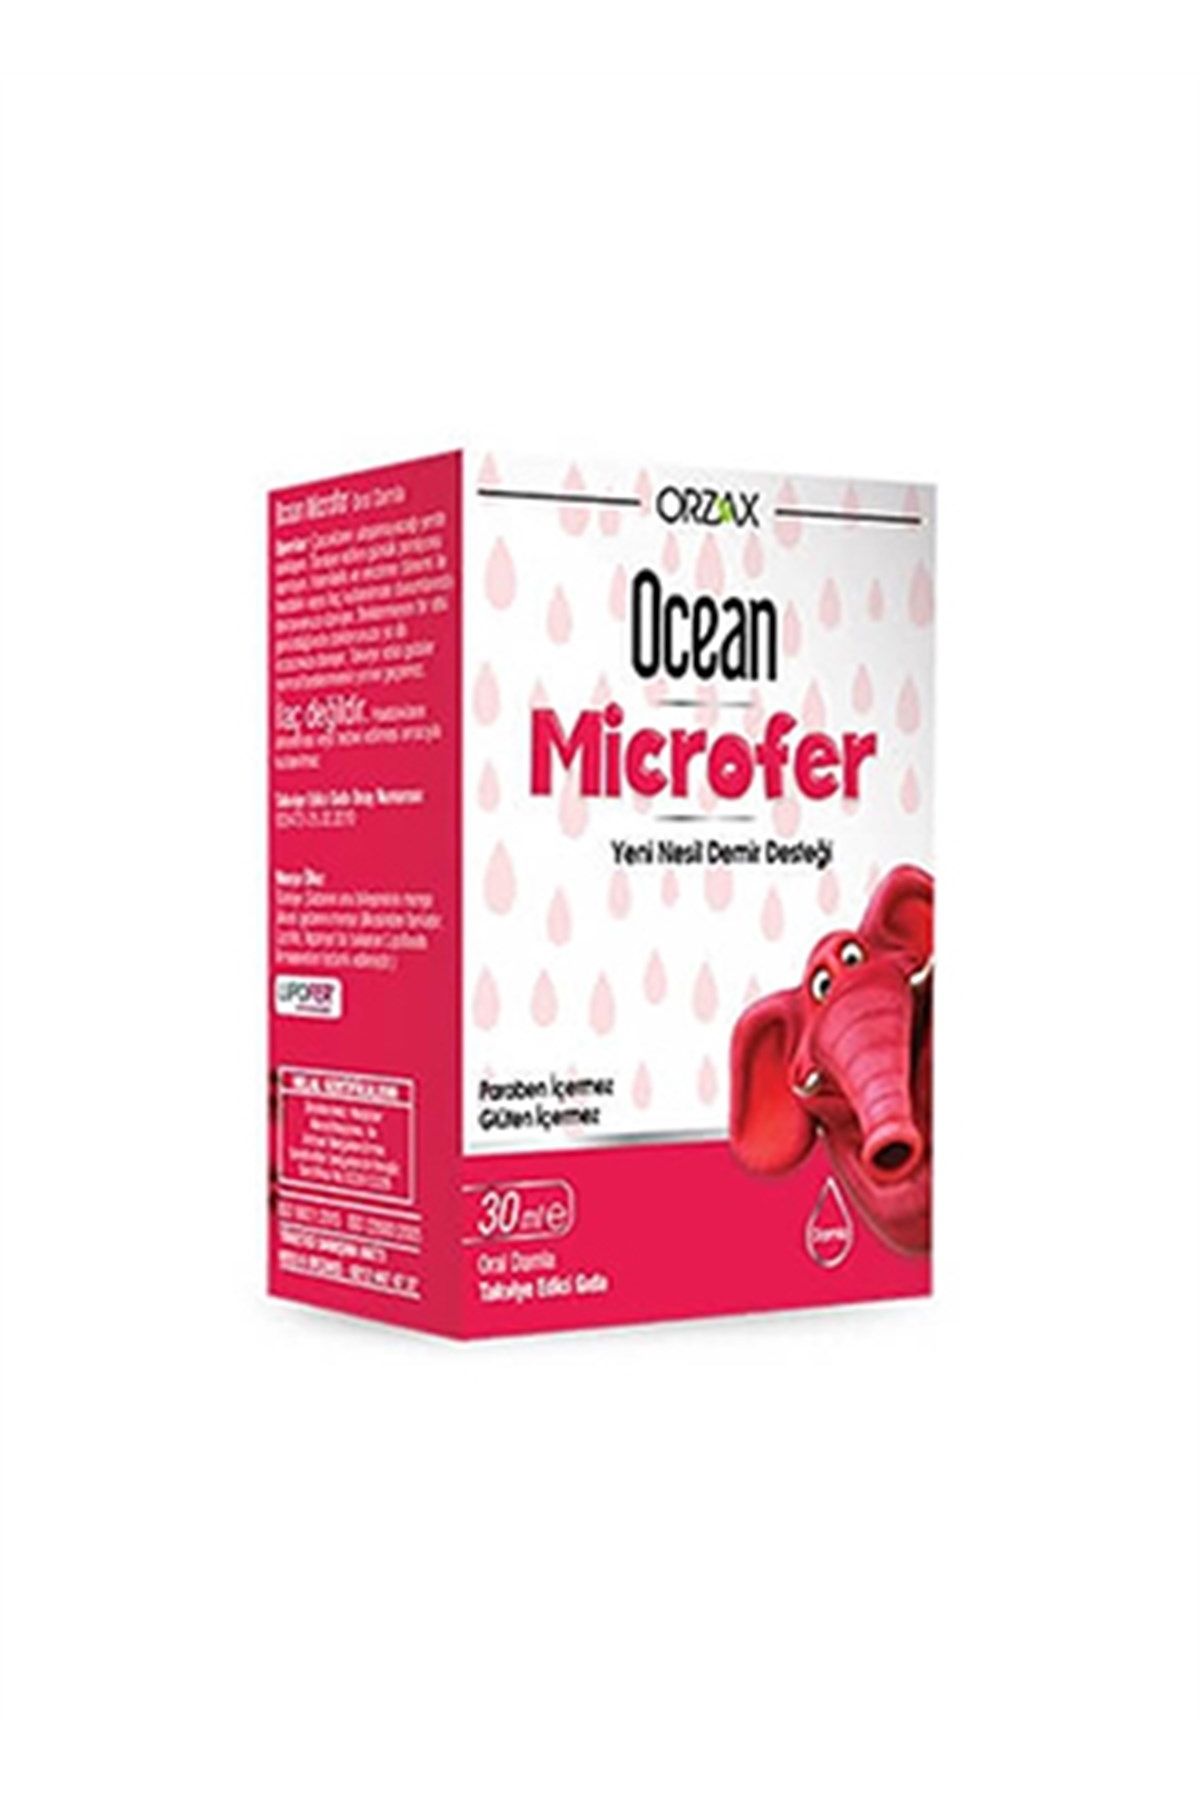 Ocean Orzax Ocean Microfer Damla 30 ml Demir Desteği 4-10 yaş grubu çocuklar için günde 1 ml'dir...